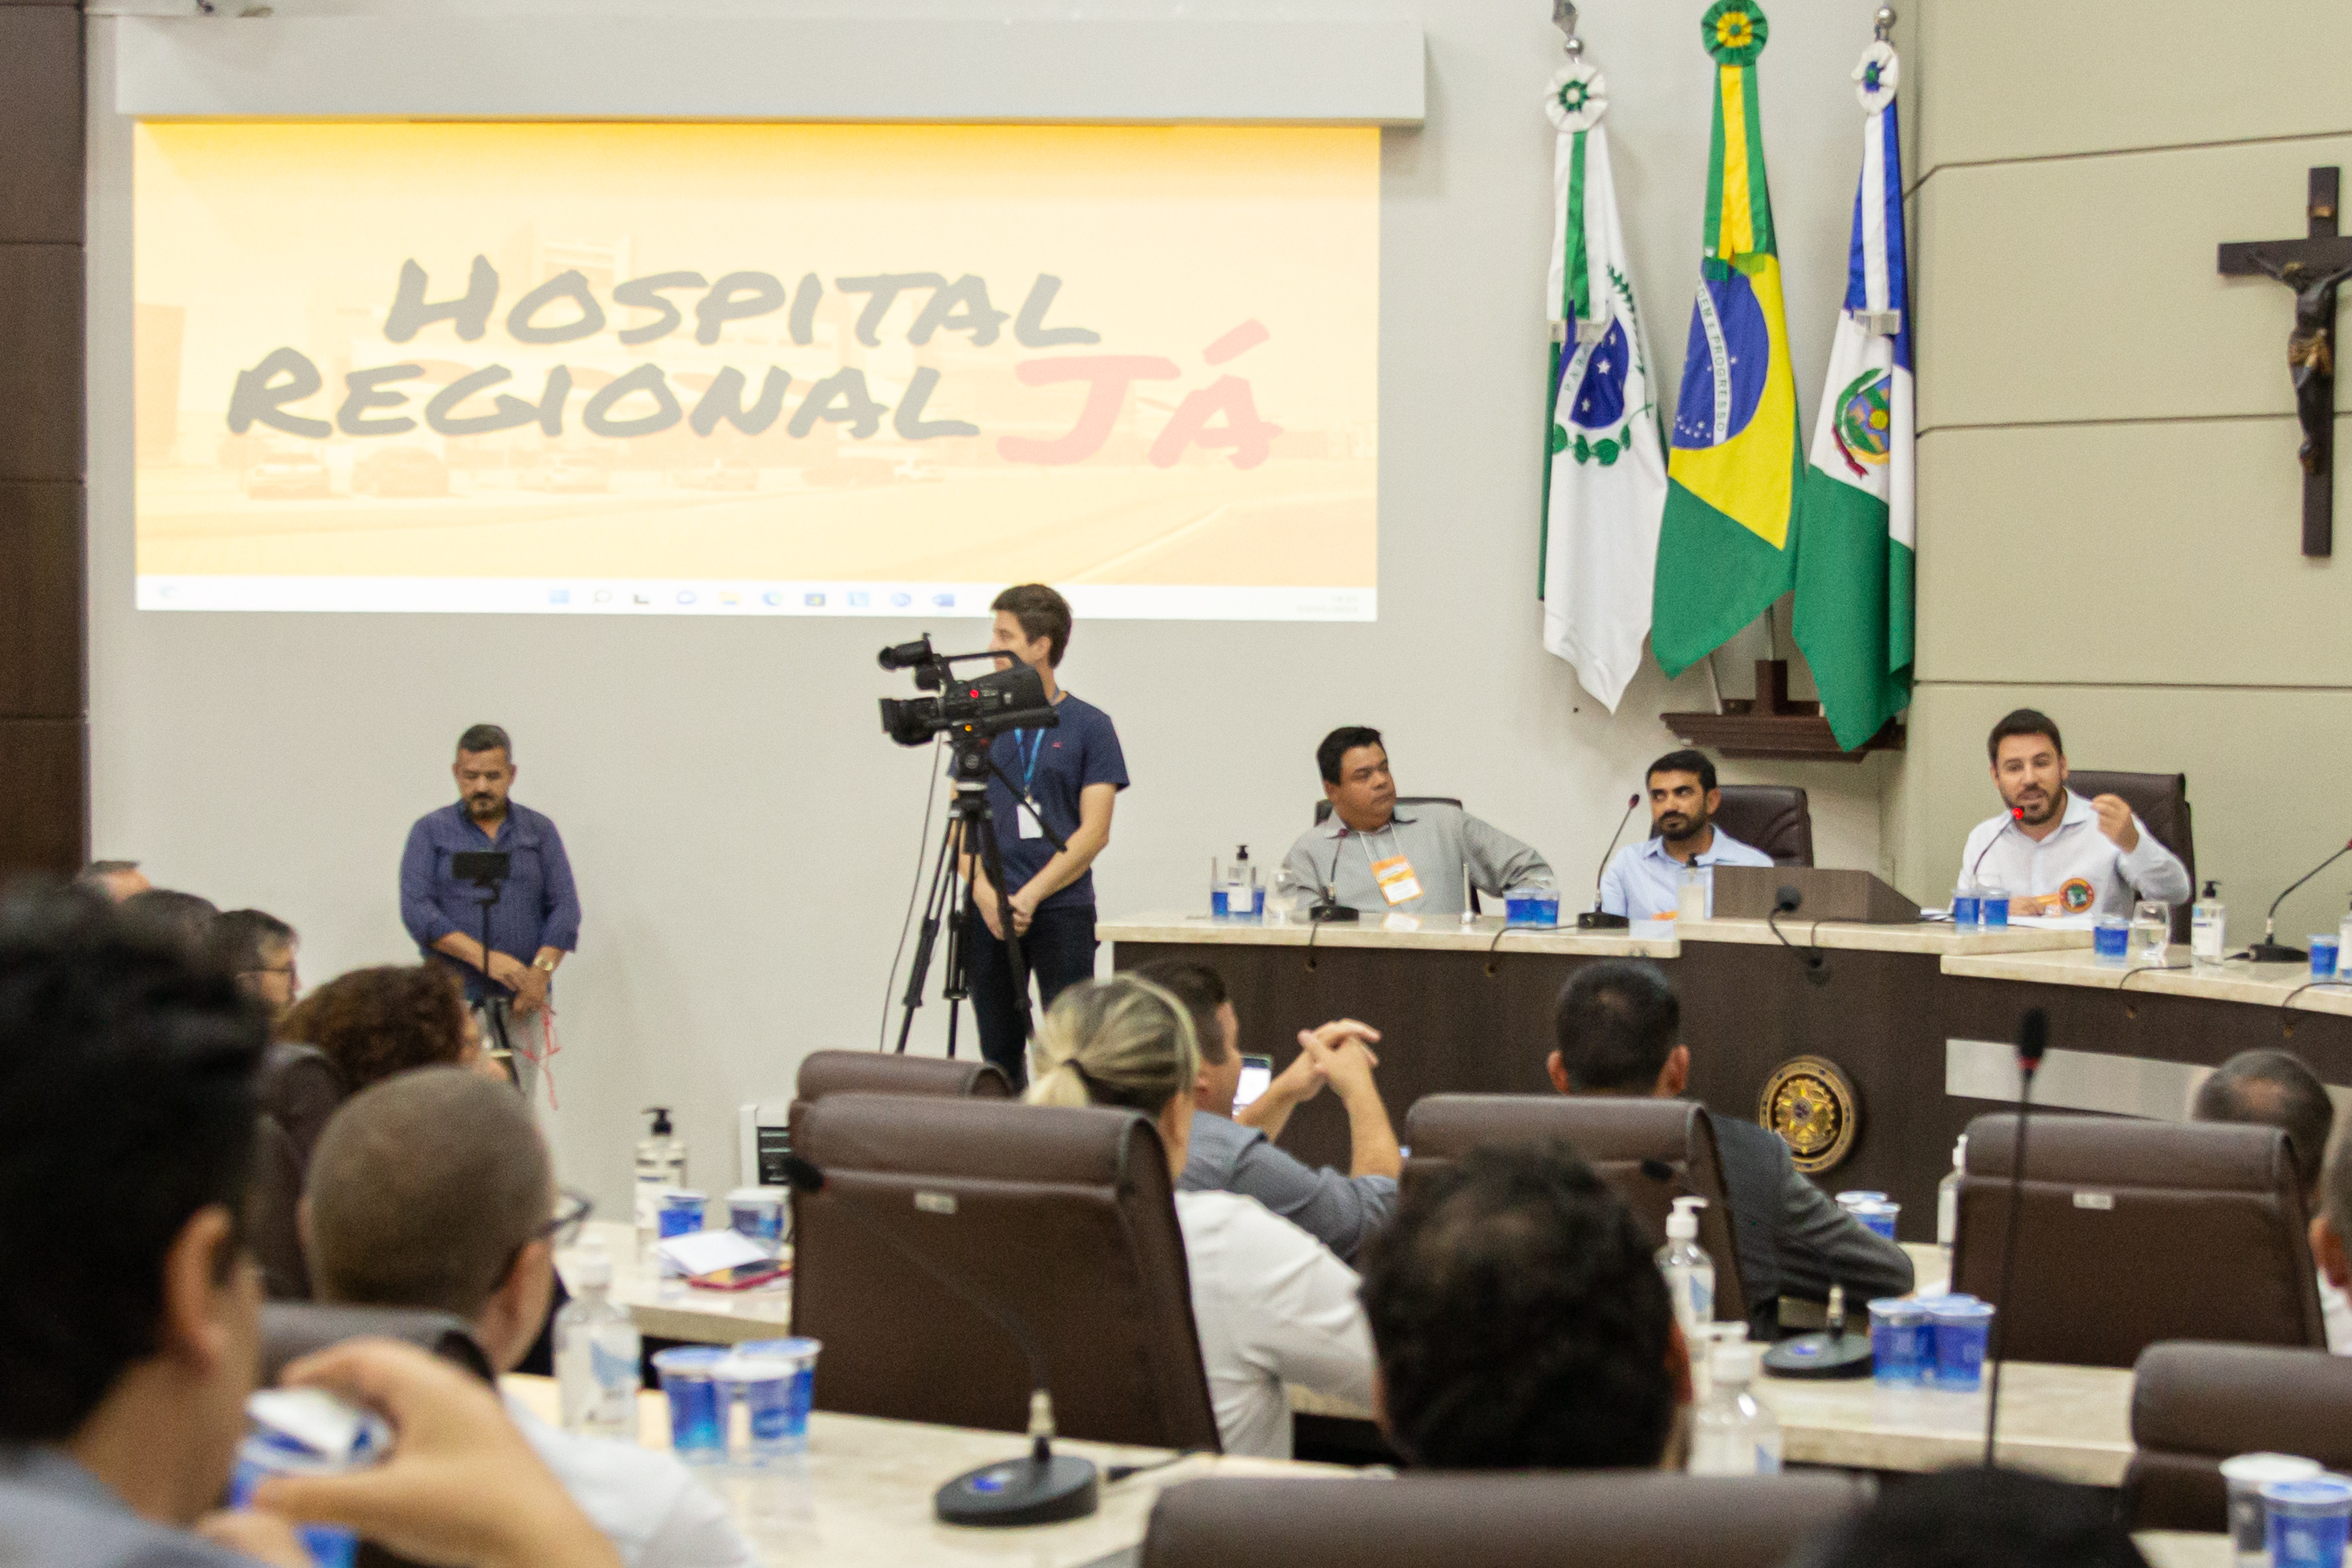 Hospital Regional Já - autoridades de toda a região se reúnem na Câmara de Guarapuava